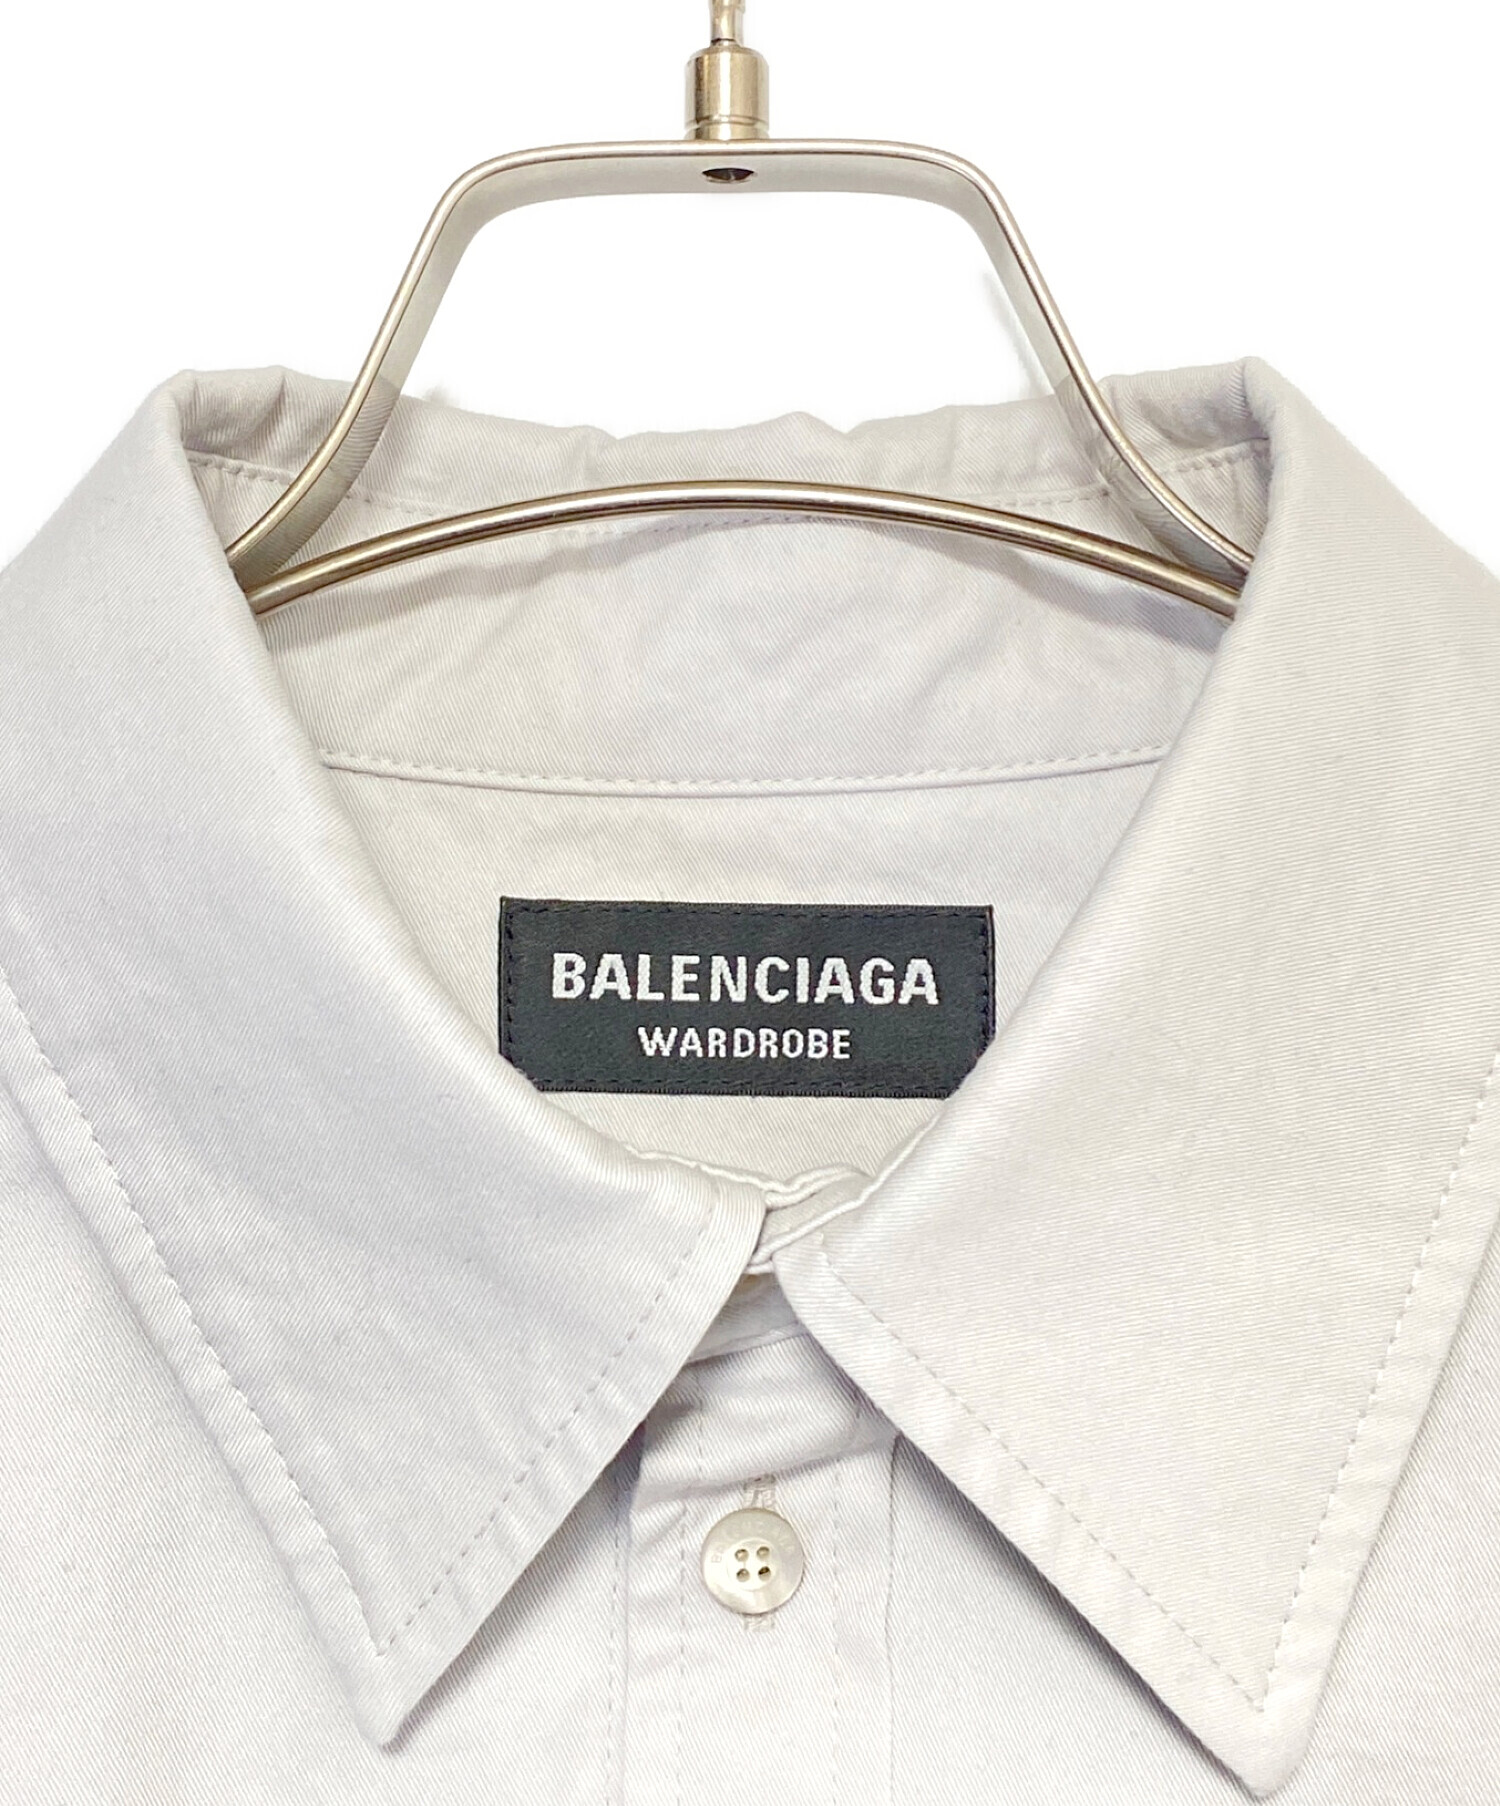 BALENCIAGA (バレンシアガ) オーバーサイズダブルフェイス長袖シャツ ライトグレー サイズ:44 未使用品